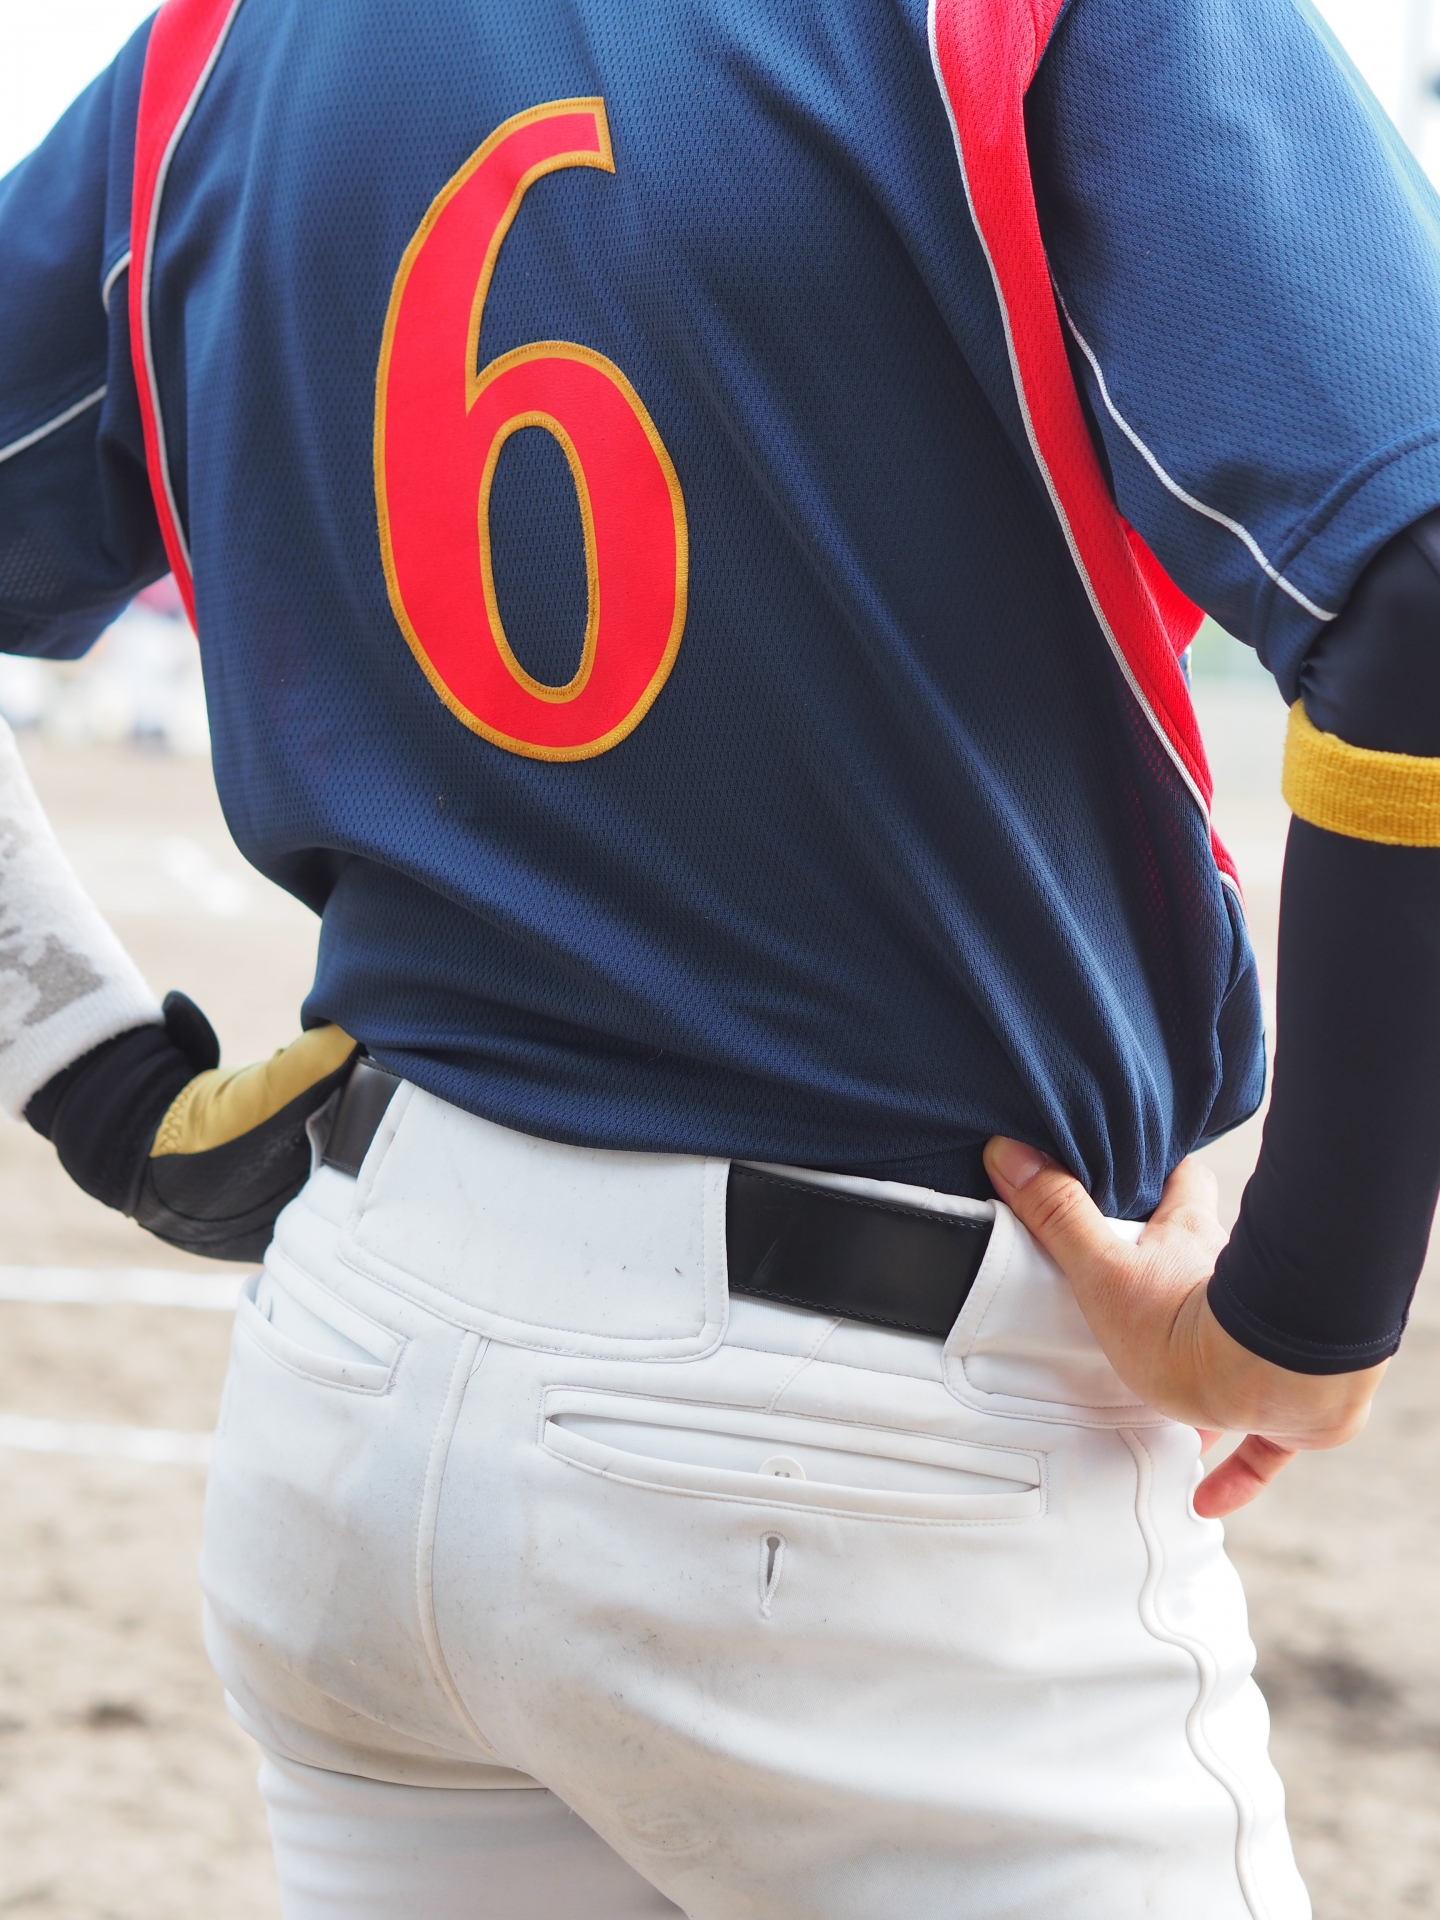 少年野球の背番号 意味と決め方について解説 High Spec Info